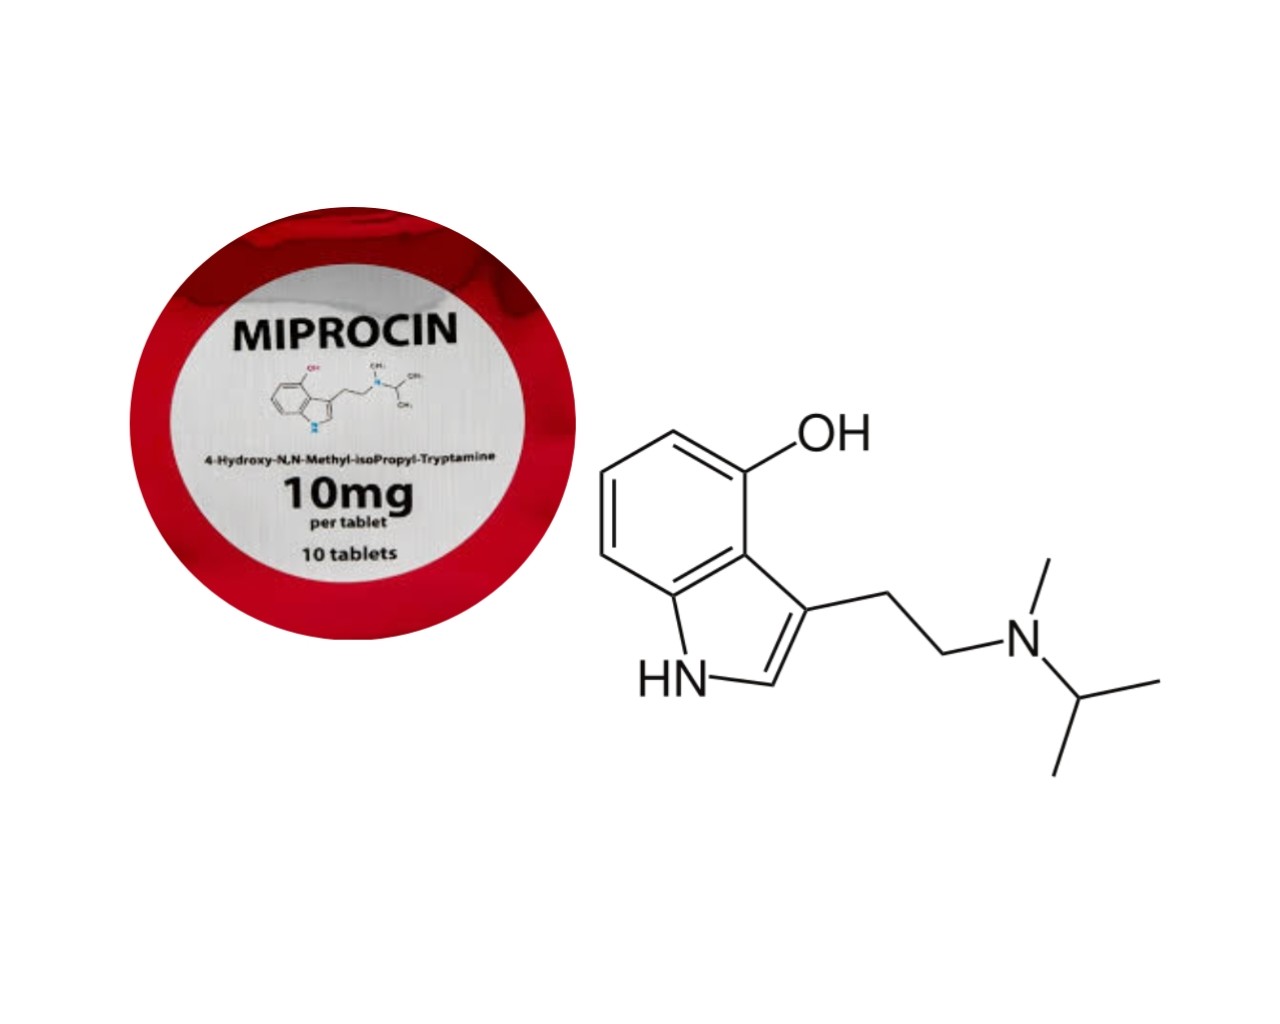 Miprocin